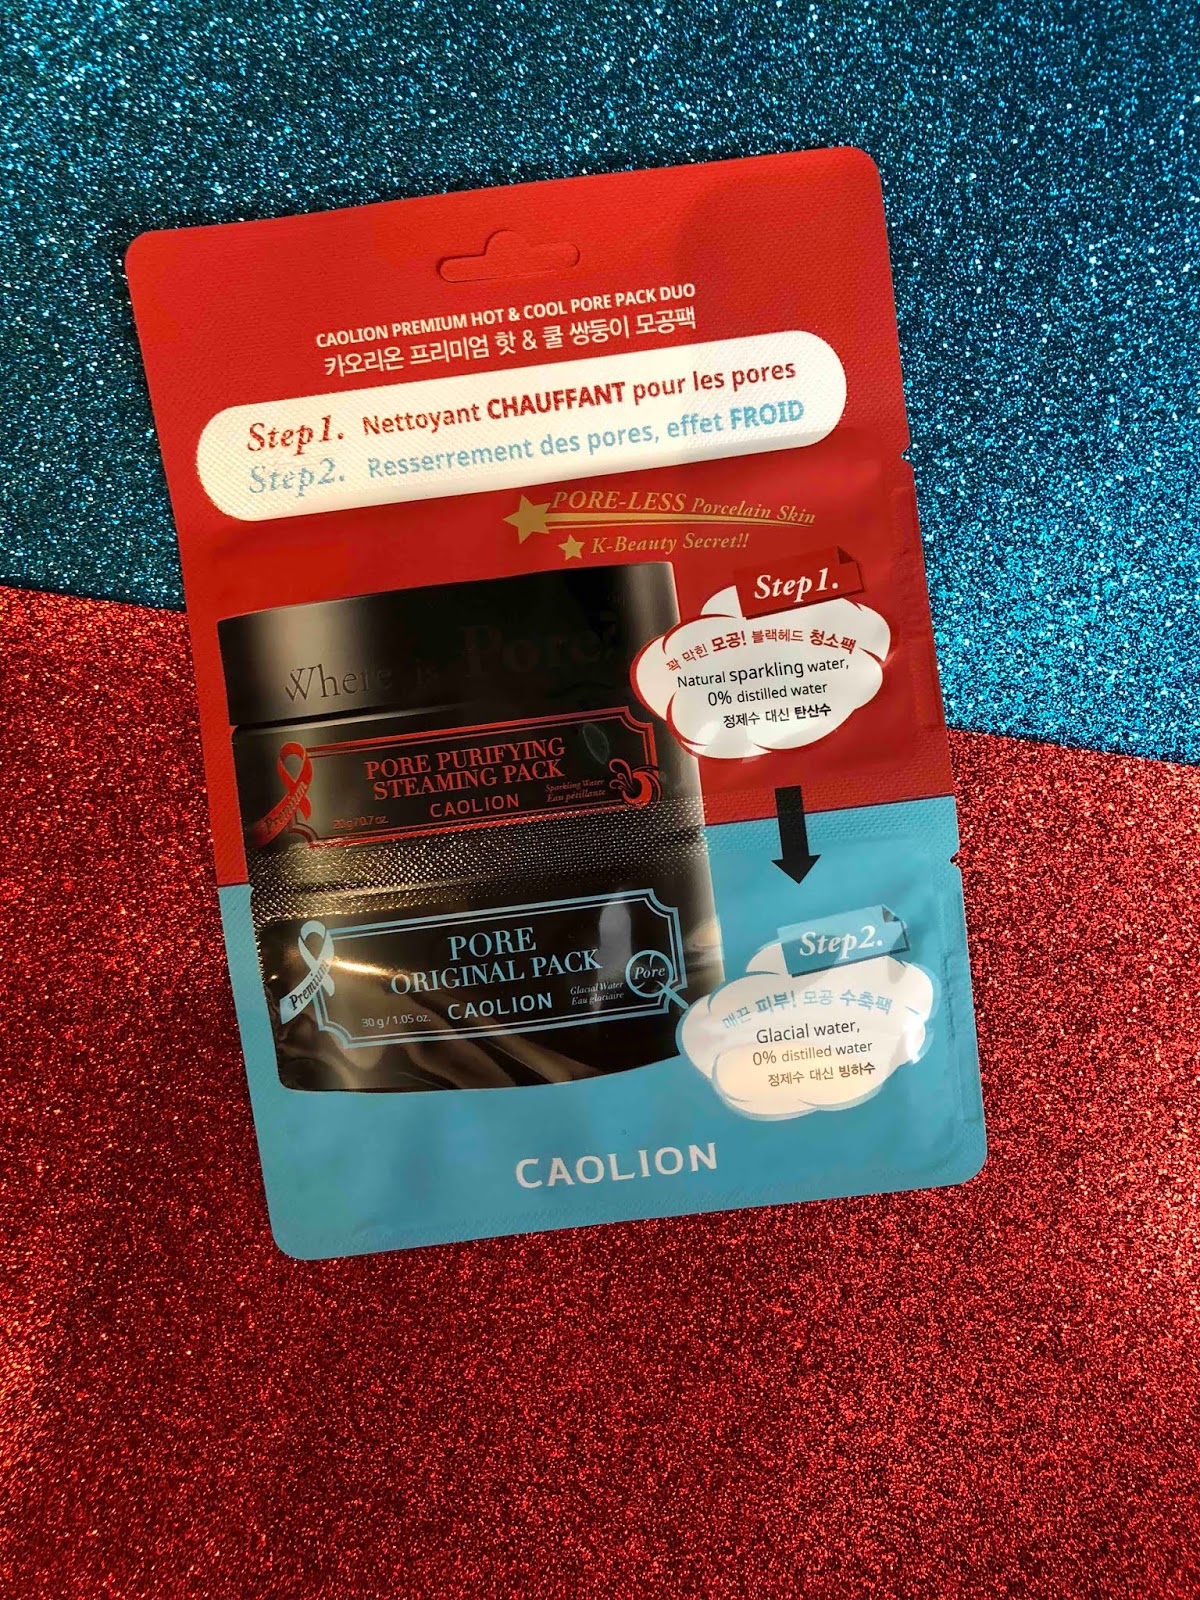 Jak zmniejszyć widoczność rozszerzonych porów: CAOLION Premium Hot&Cool Pore Pack Duo